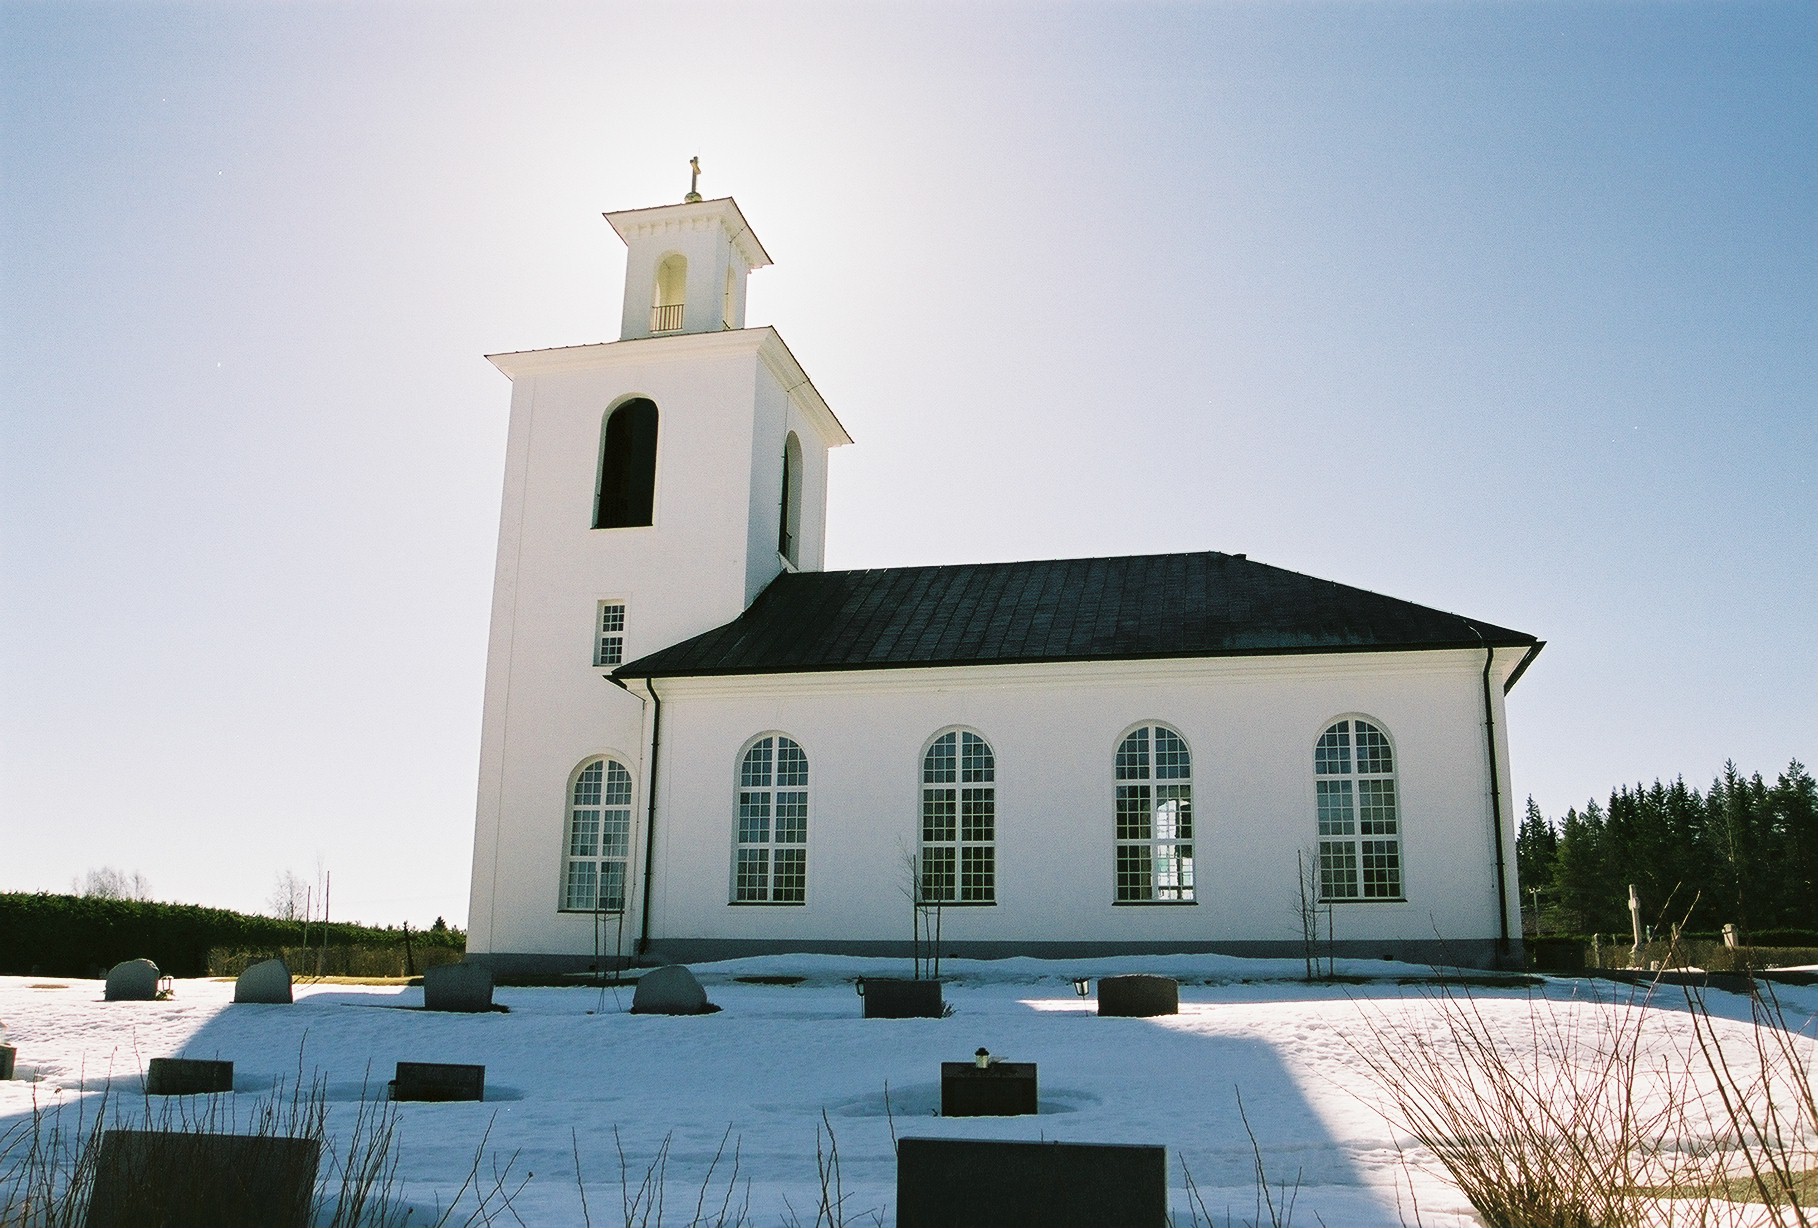 Kyrkås kyrka, exteriör, norra fasaden.

Bilderna är tagna av Martin Lagergren & Emelie Petersson, bebyggelseantikvarier vid Jämtlands läns museum, i samband med inventeringen, 2004-2005.